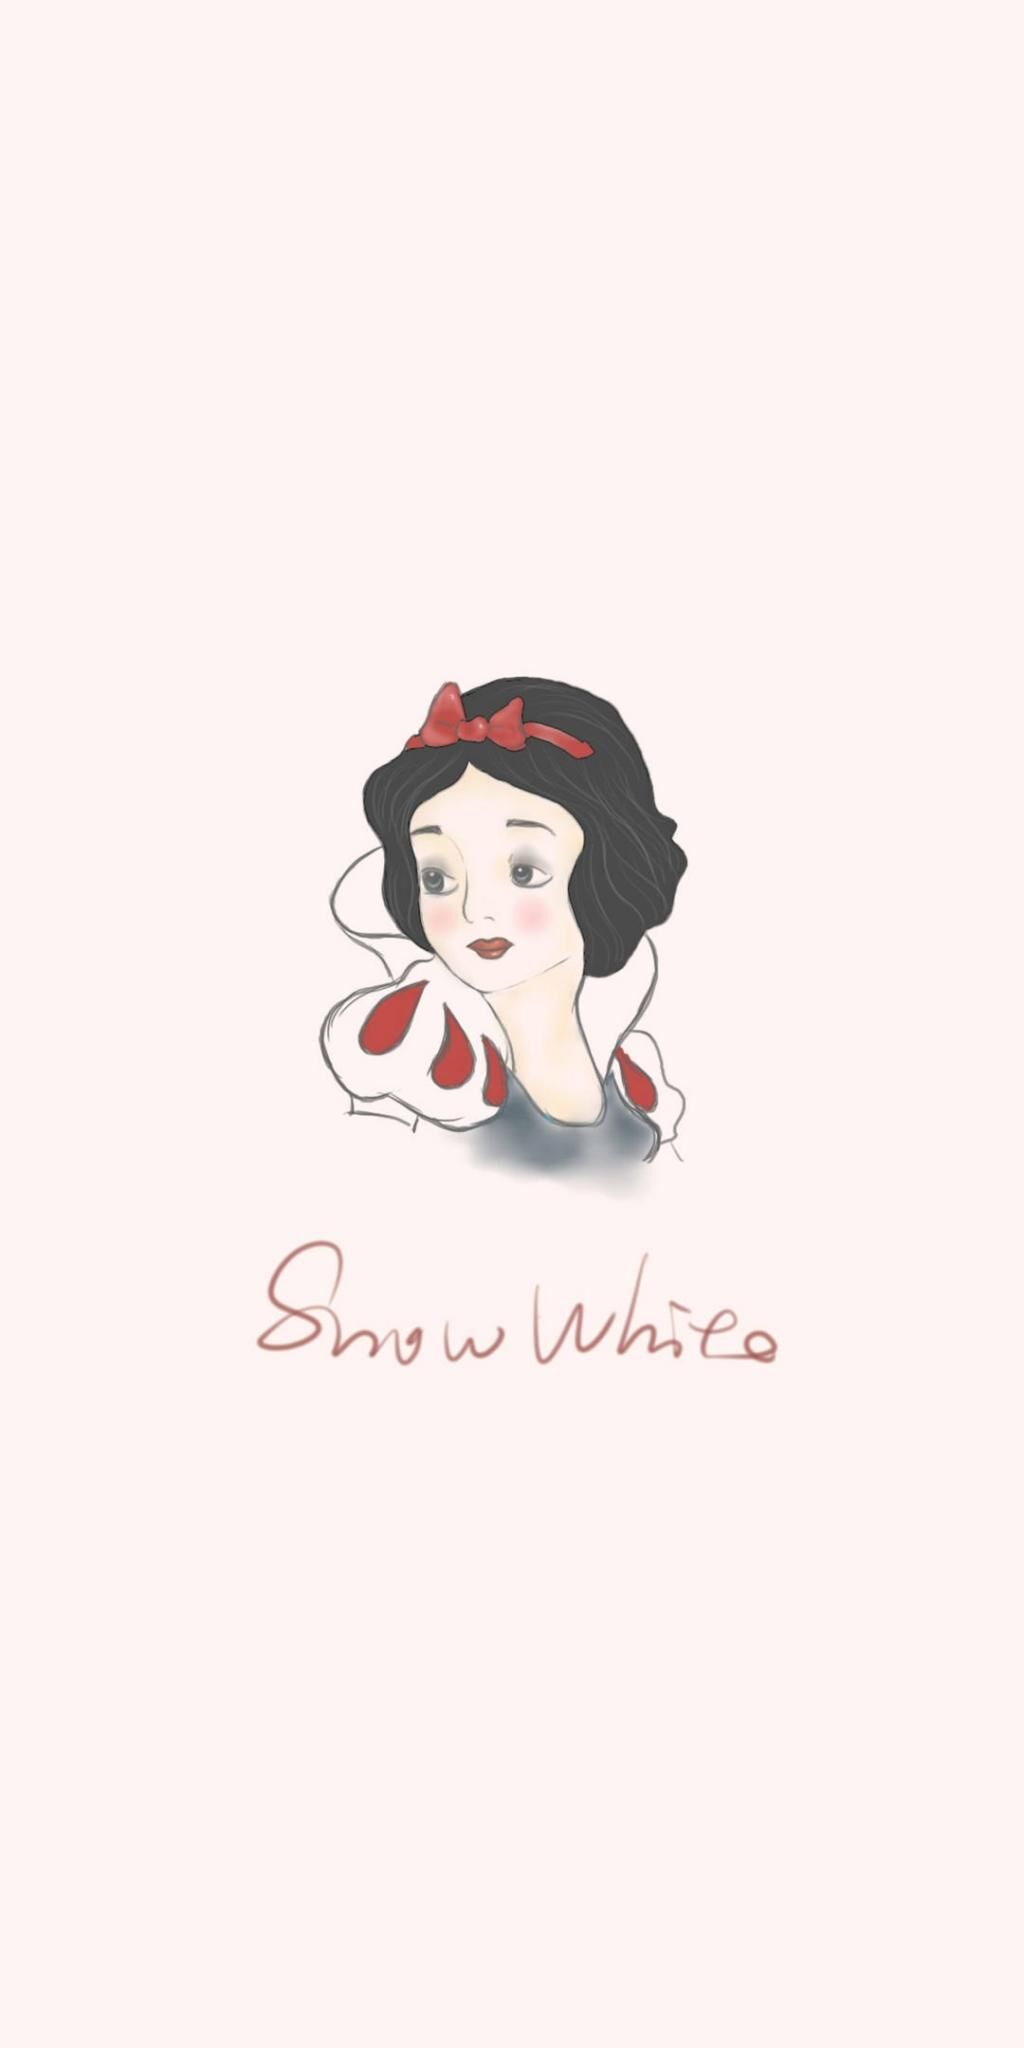 手描きの美しい白雪姫 ロック画面の画像白い顔の壁紙 携帯電話の壁紙iphoneい 壁紙